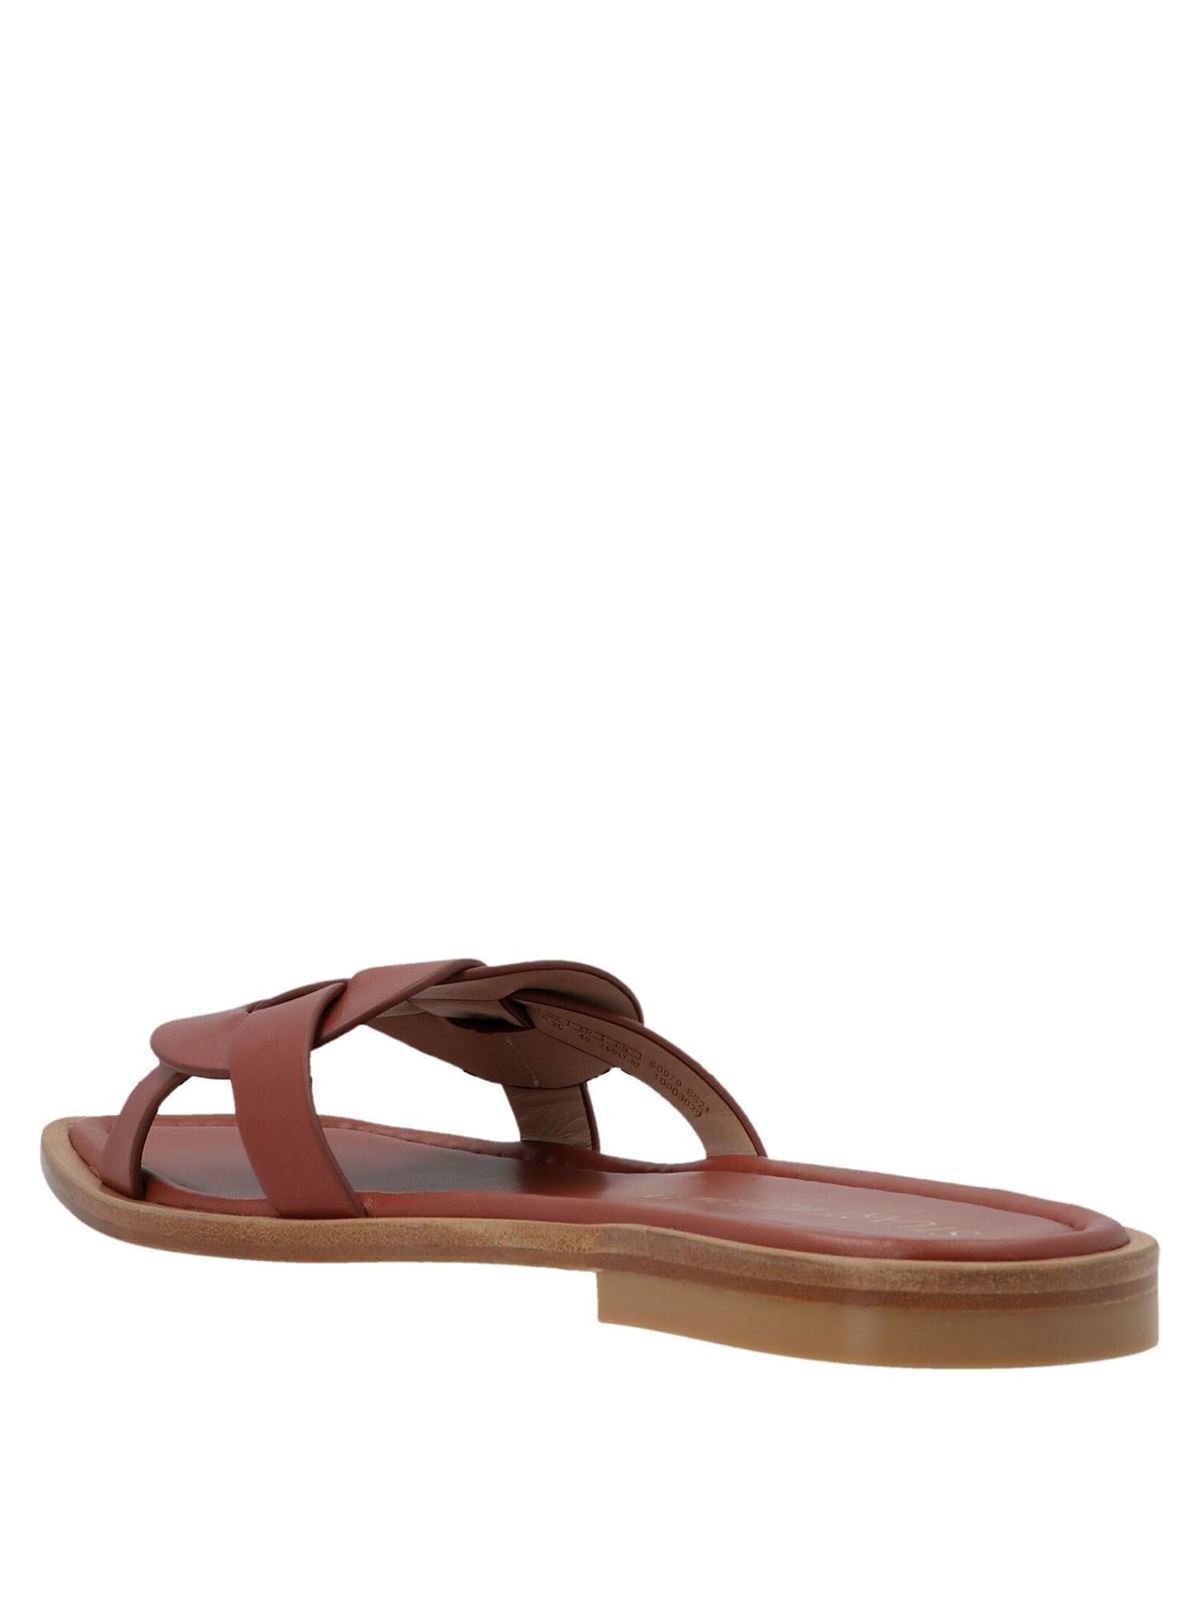 Sandals Stuart Weitzman - Sierra flat sandals in brown ...